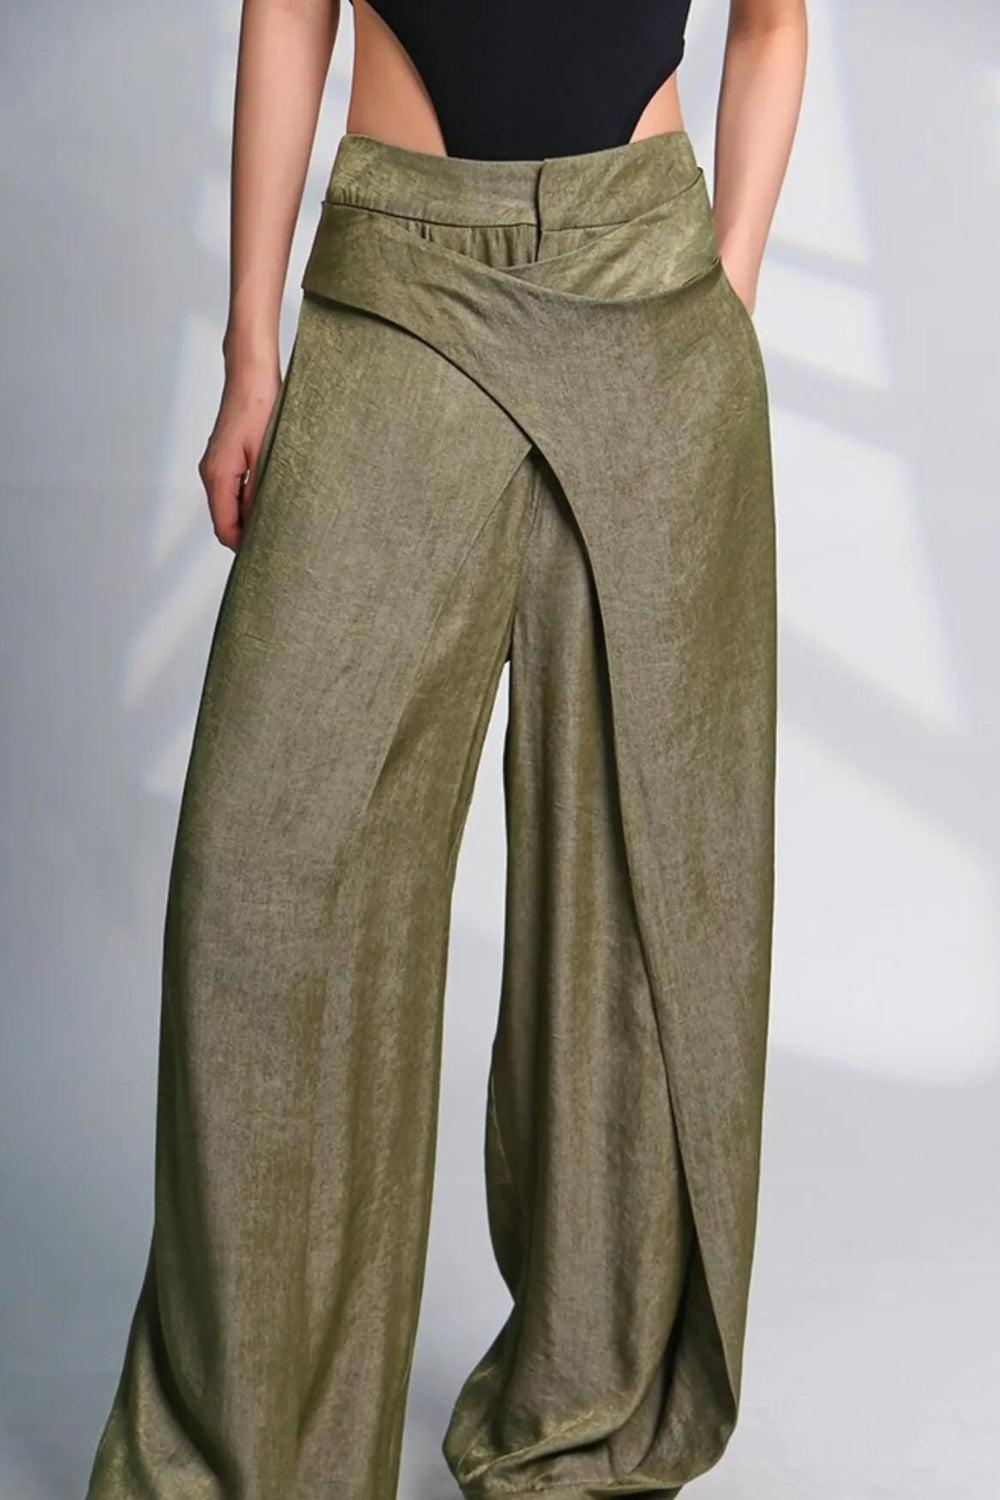 Pantalones anchos con cinturón de tela cruzada – Litlookz Studio